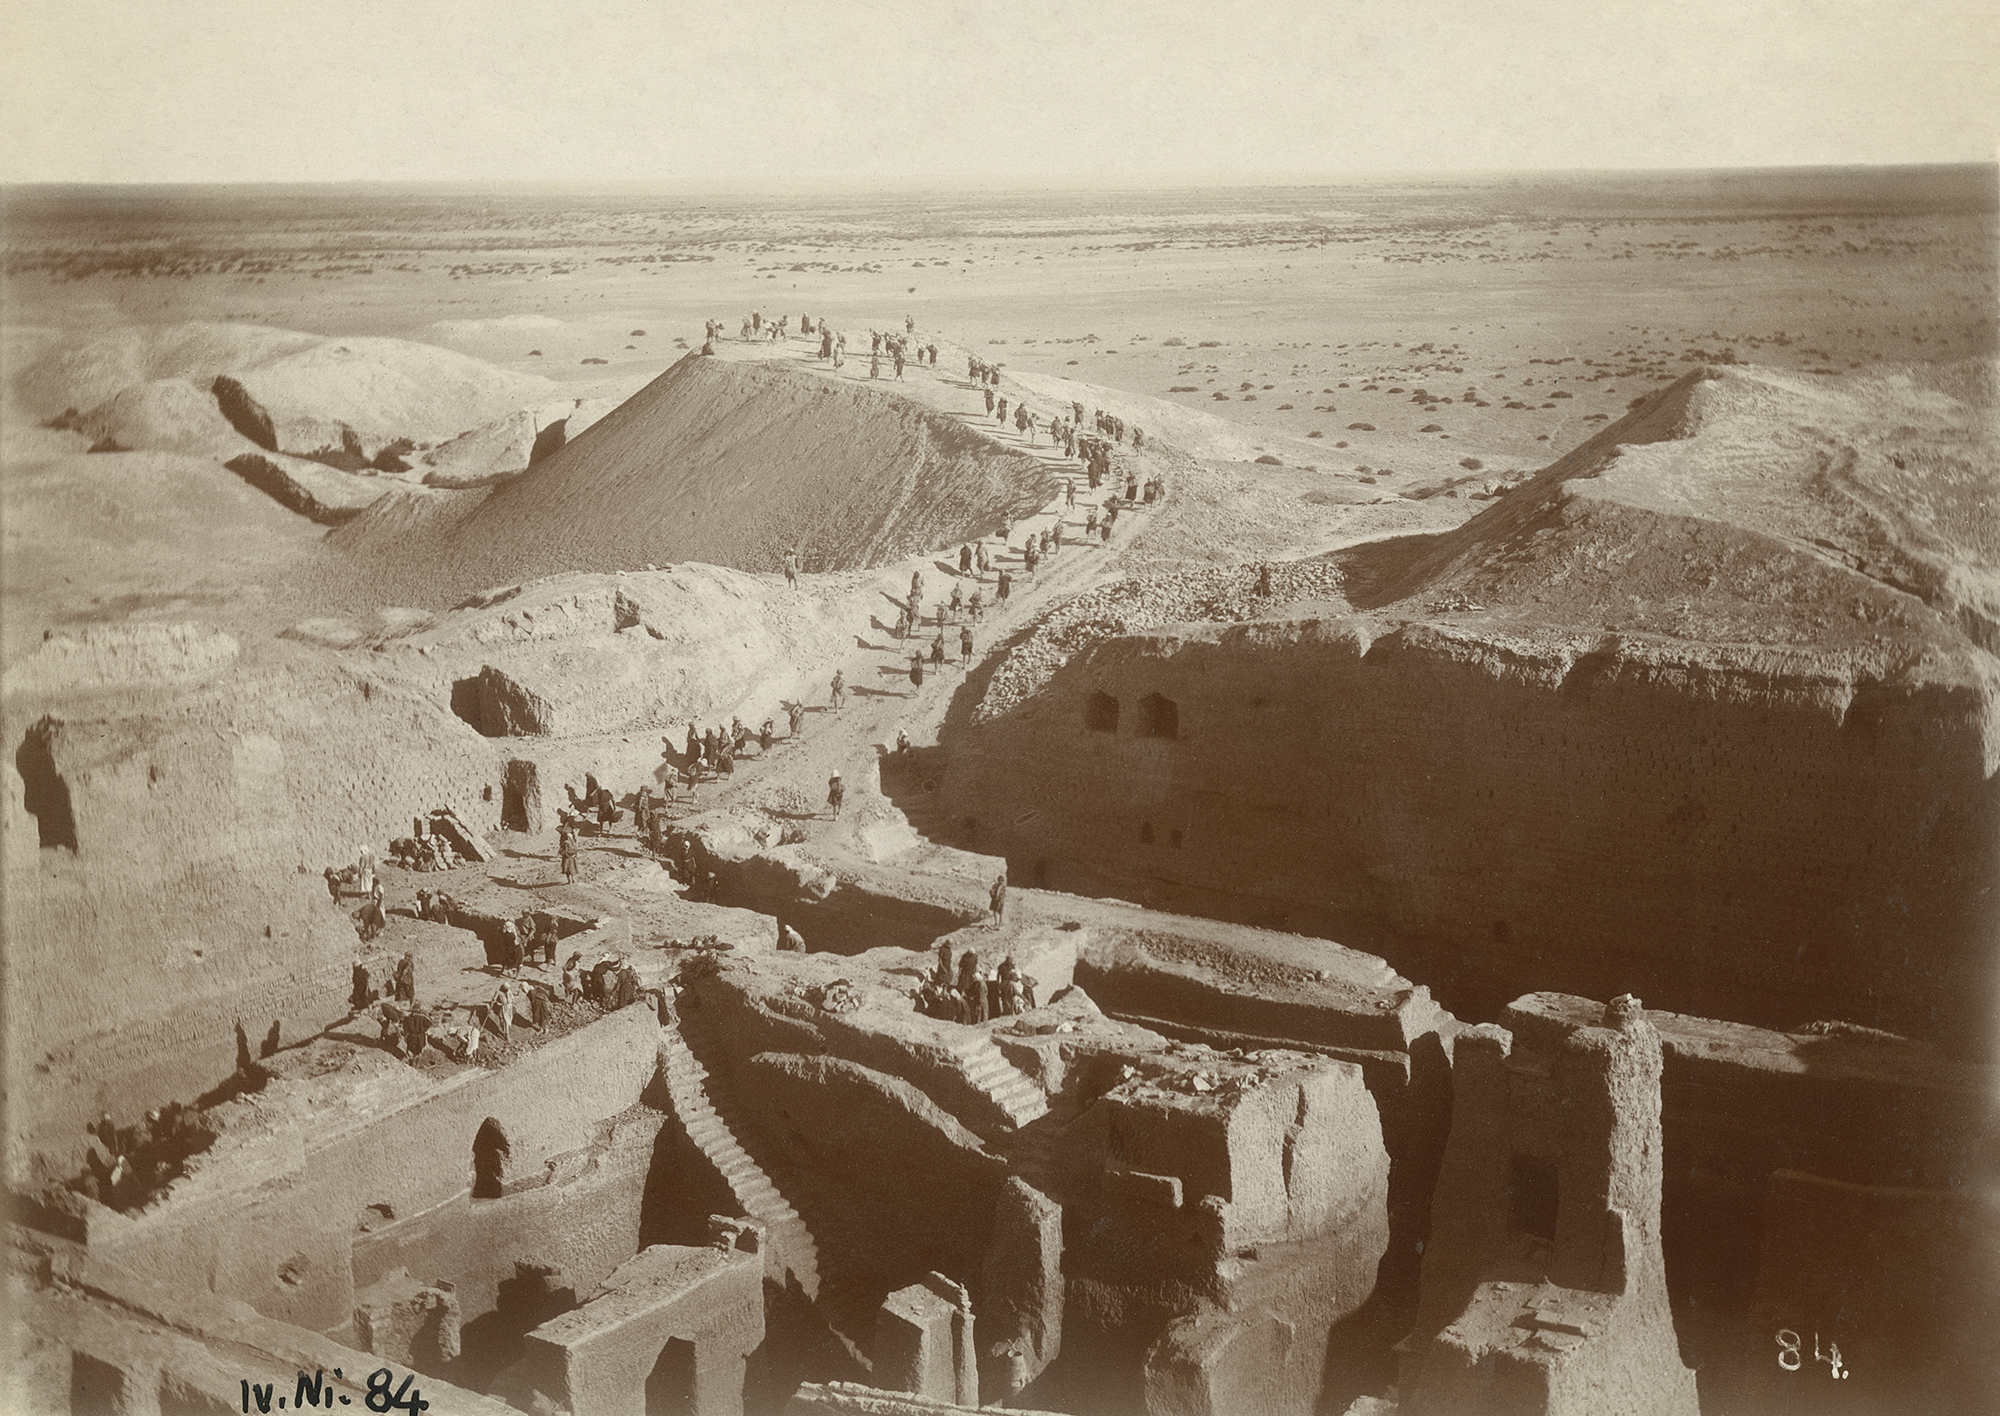 Nippur excavation where incantation bowls were found